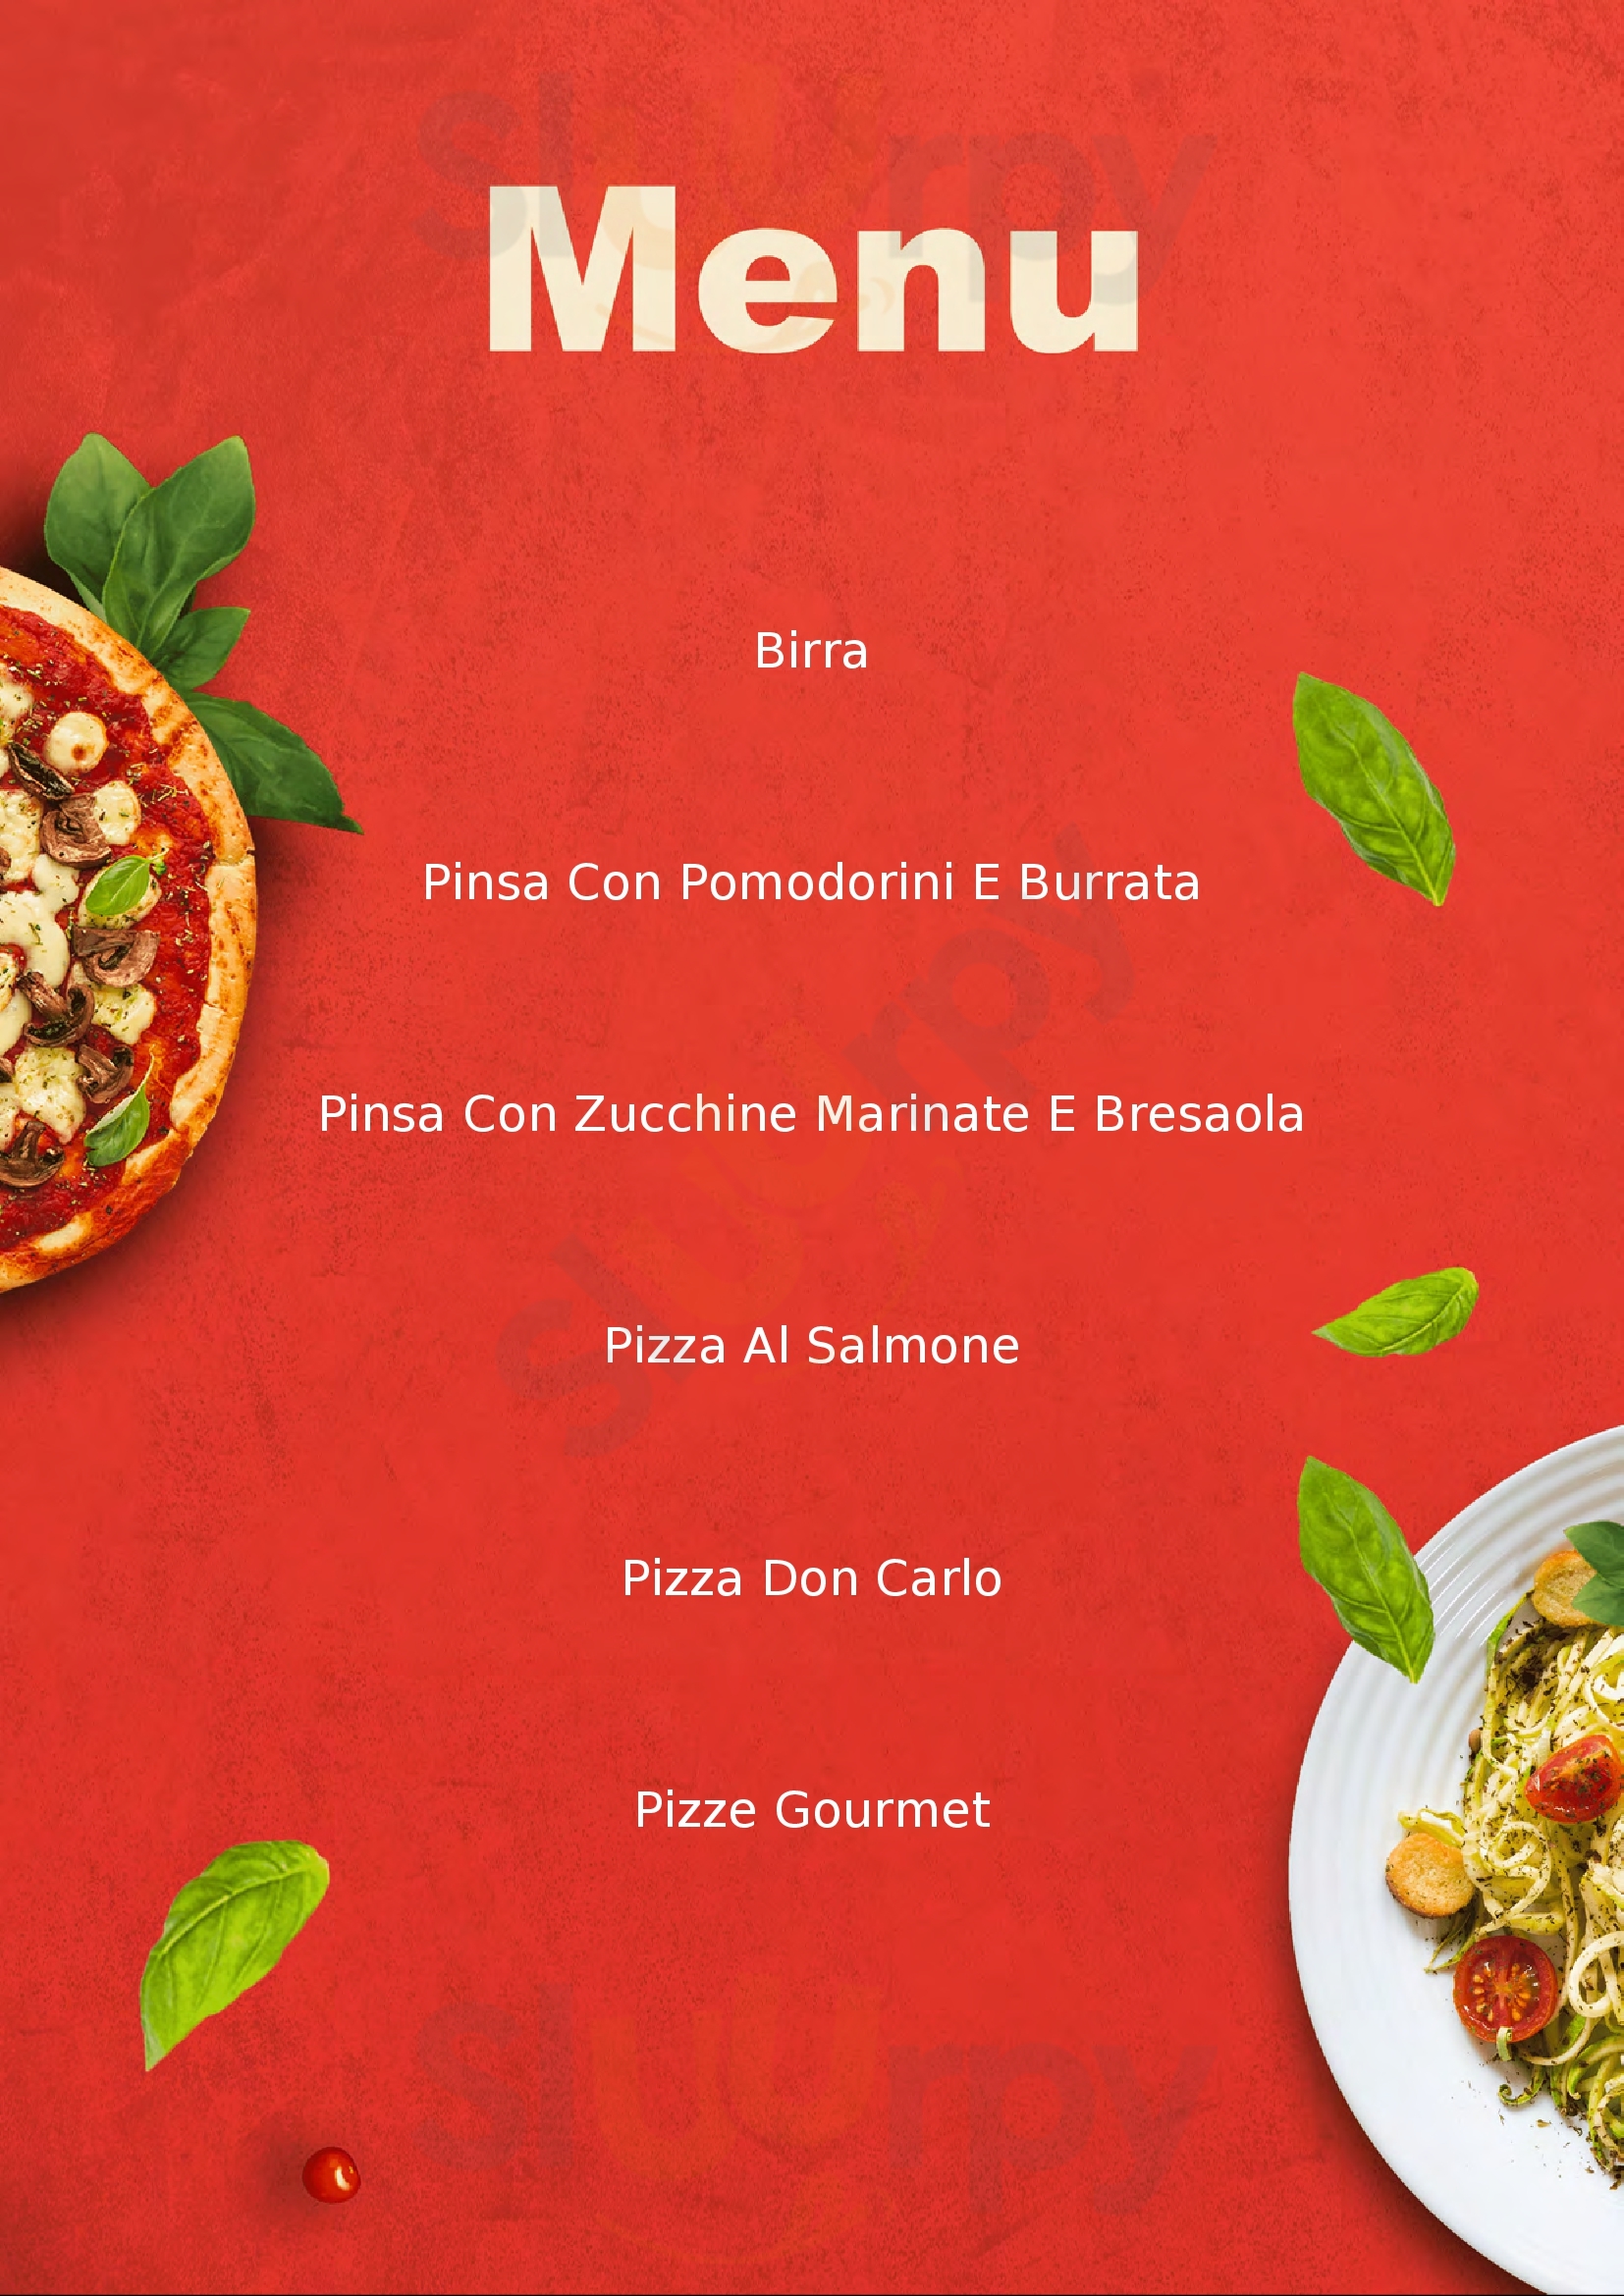 Pizzeria Terro Luzzi menù 1 pagina